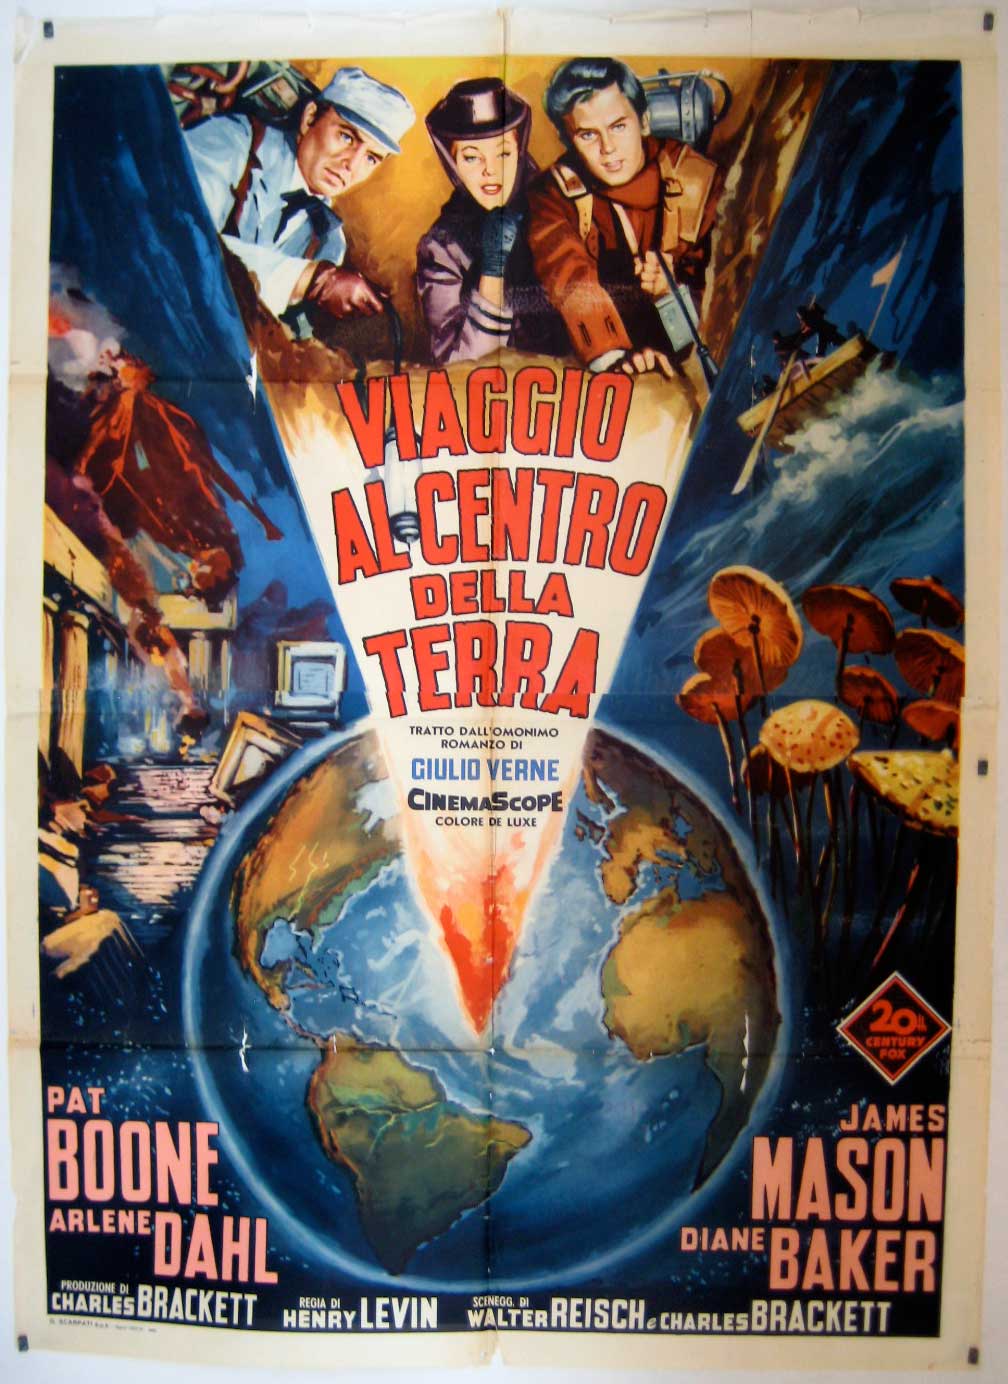 "VIAGGIO AL CENTRO DELLA TERRA" MOVIE POSTER "JOURNEY TO THE CENTER OF THE EARTH" MOVIE POSTER